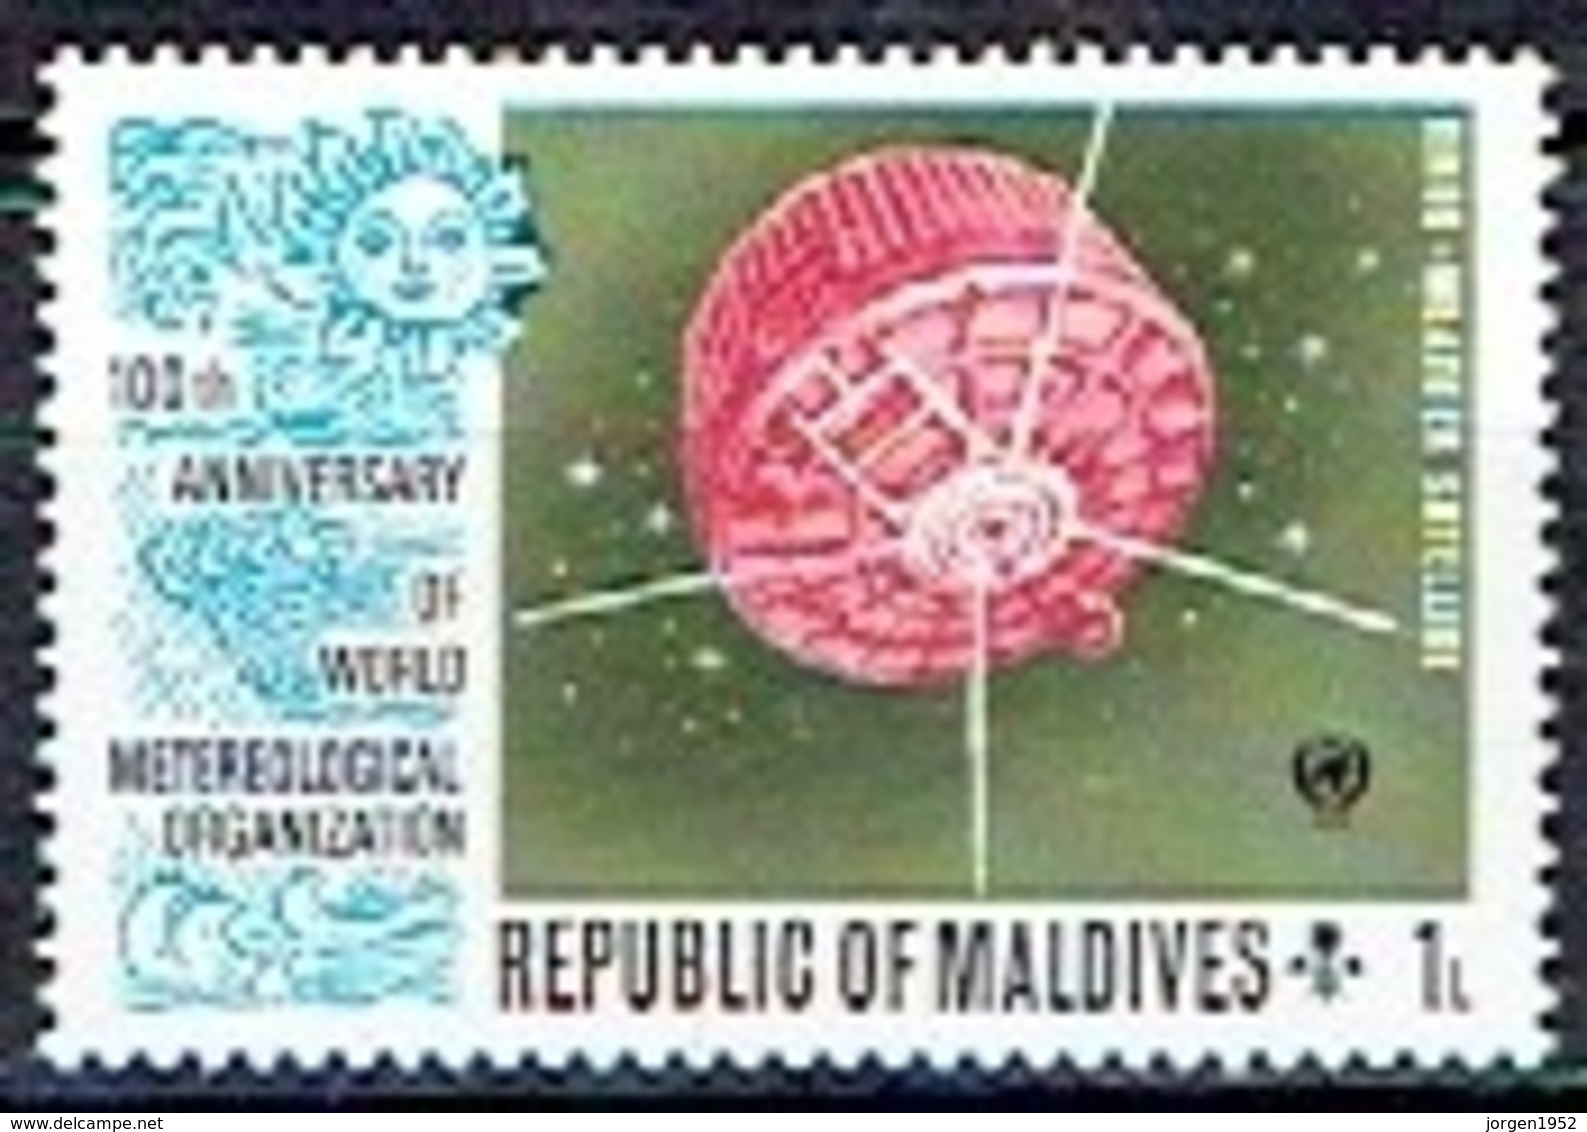 MALDIVES  #   FROM 1974  STAMPWORLD 481** - Maldives (1965-...)